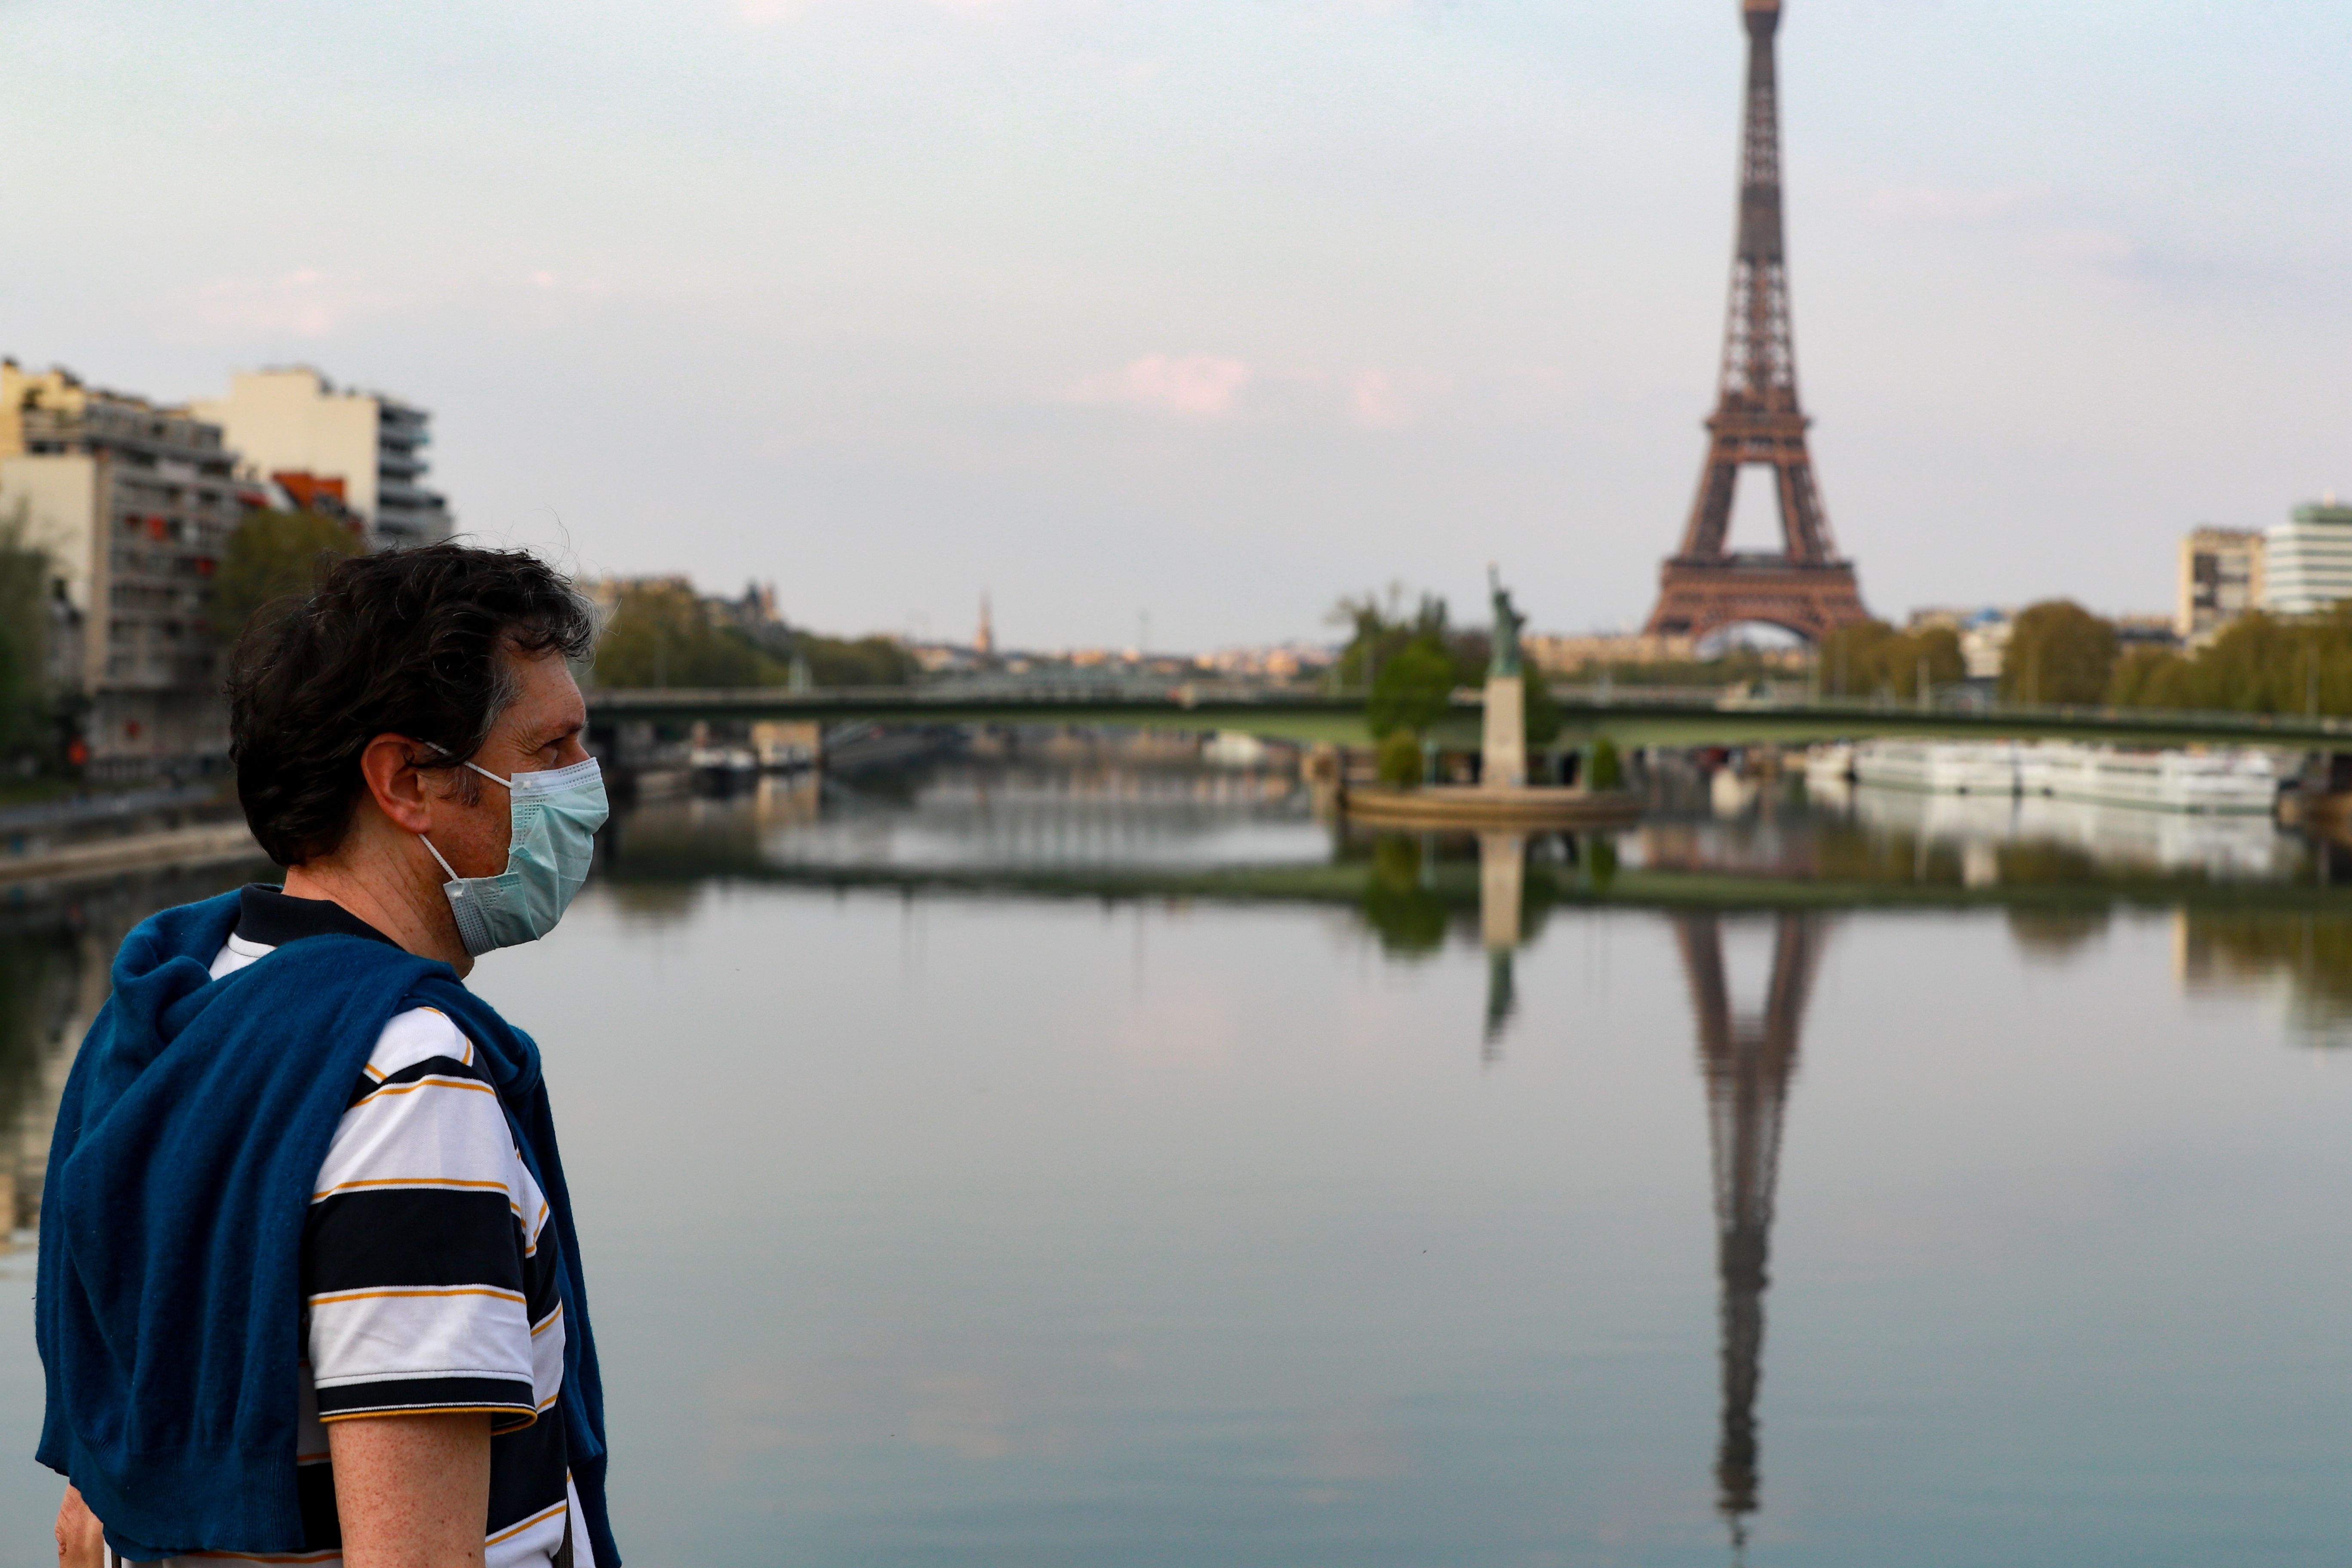 Un estudio sobre cómo la torre Eiffel parece más pequeña si se mira inclinándose uno a la izquierda fue reconocido con un premio Ig Nobel /Ludovic Marin/AFP/dpa 